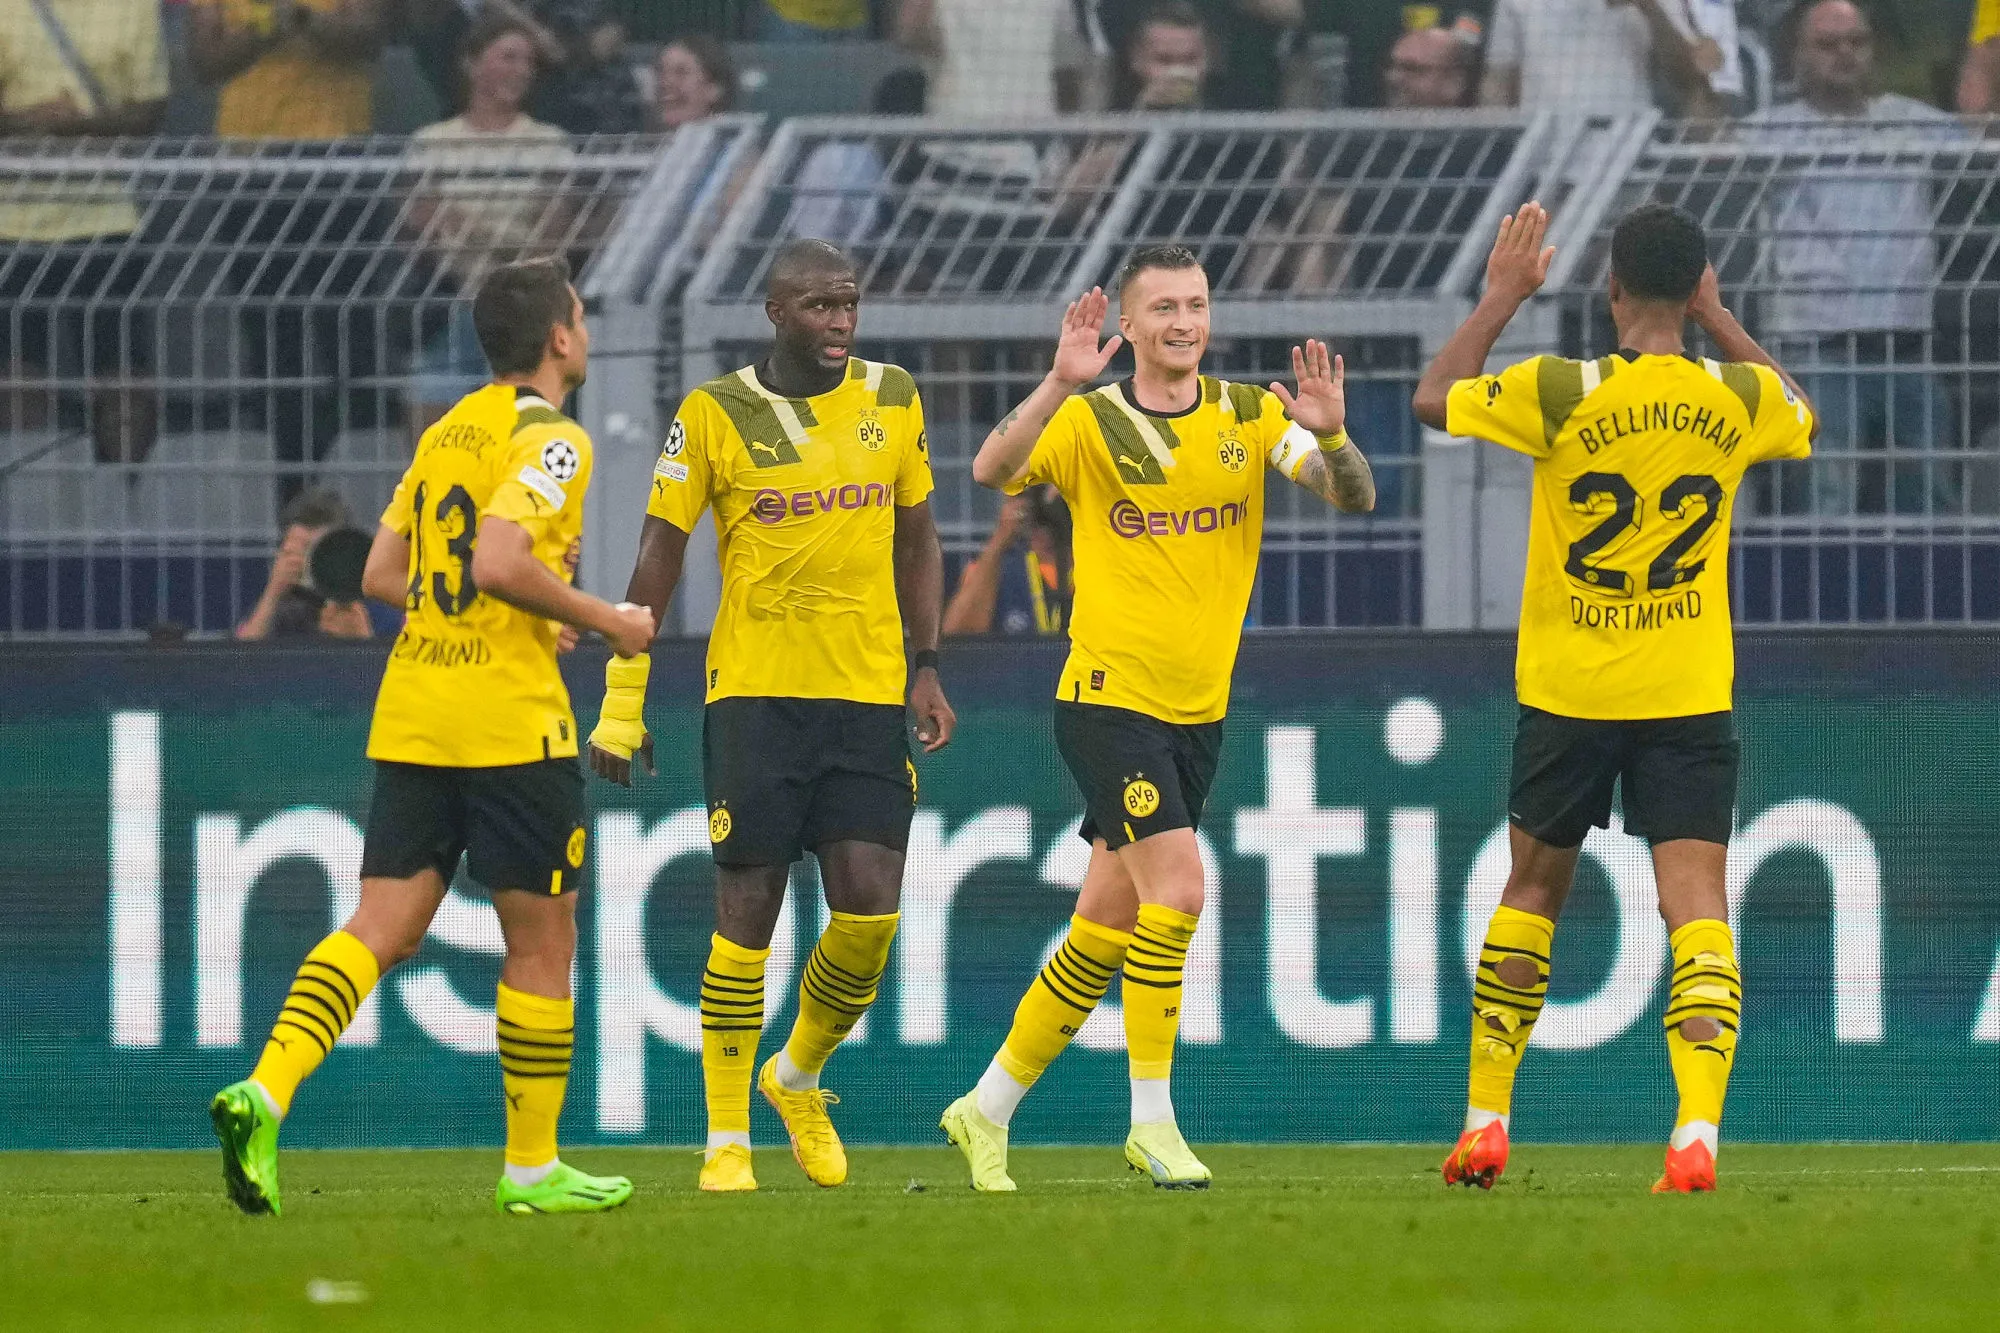 Vainqueur contre Copenhague, le Borussia Dortmund assure